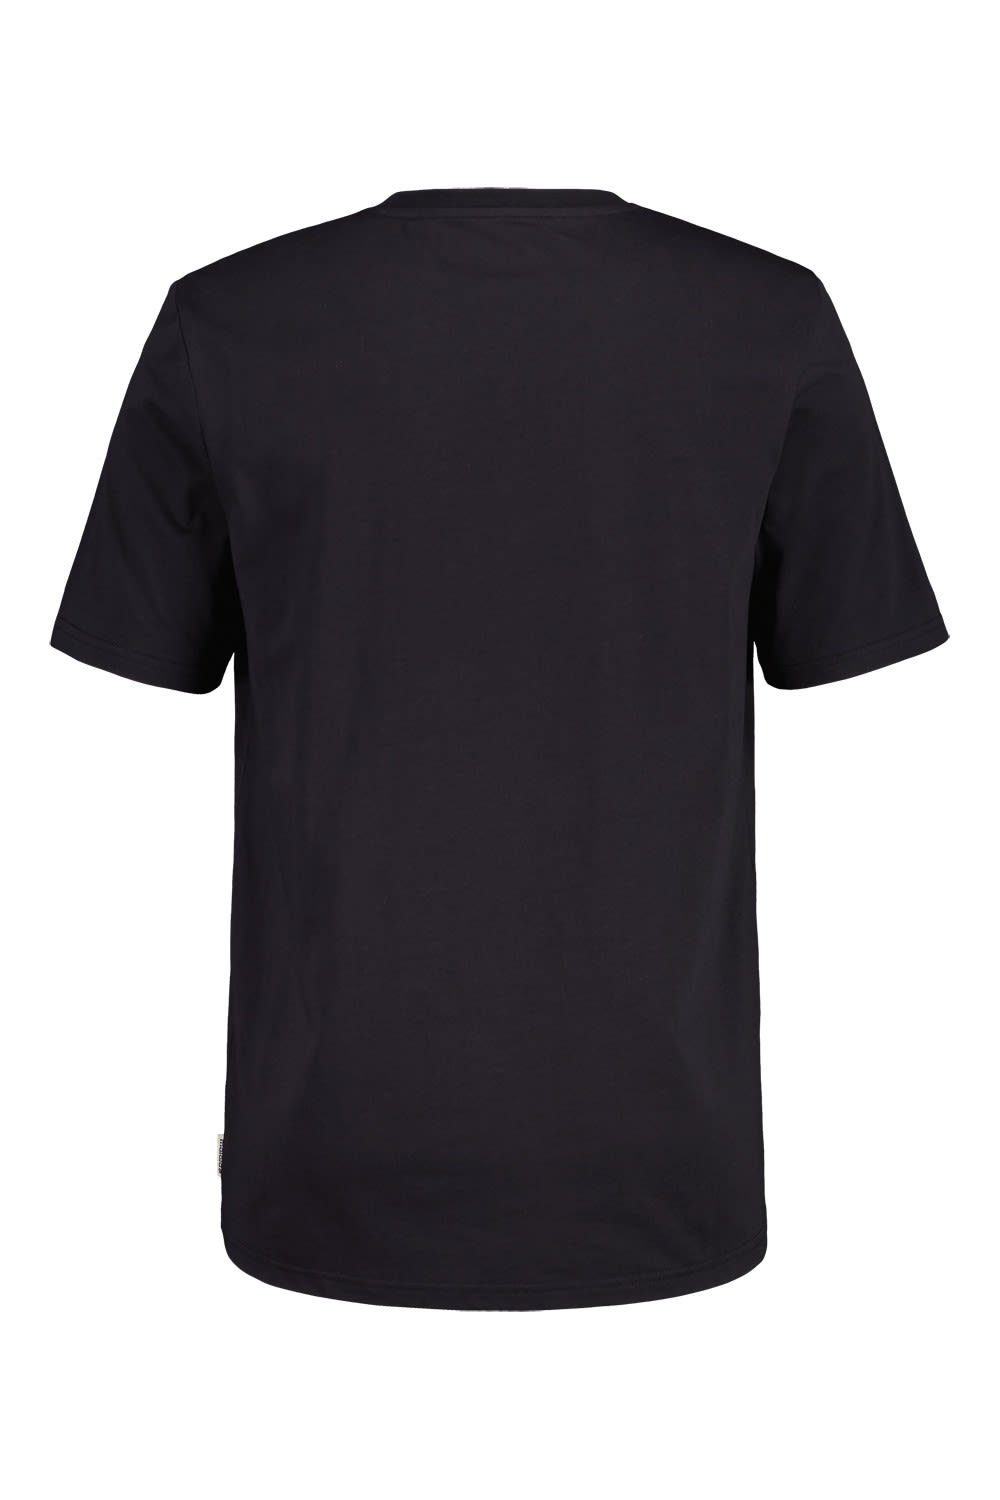 Moonless Maloja T-Shirt Kurzarm-Shirt T-shirt Duranm. Herren Maloja M